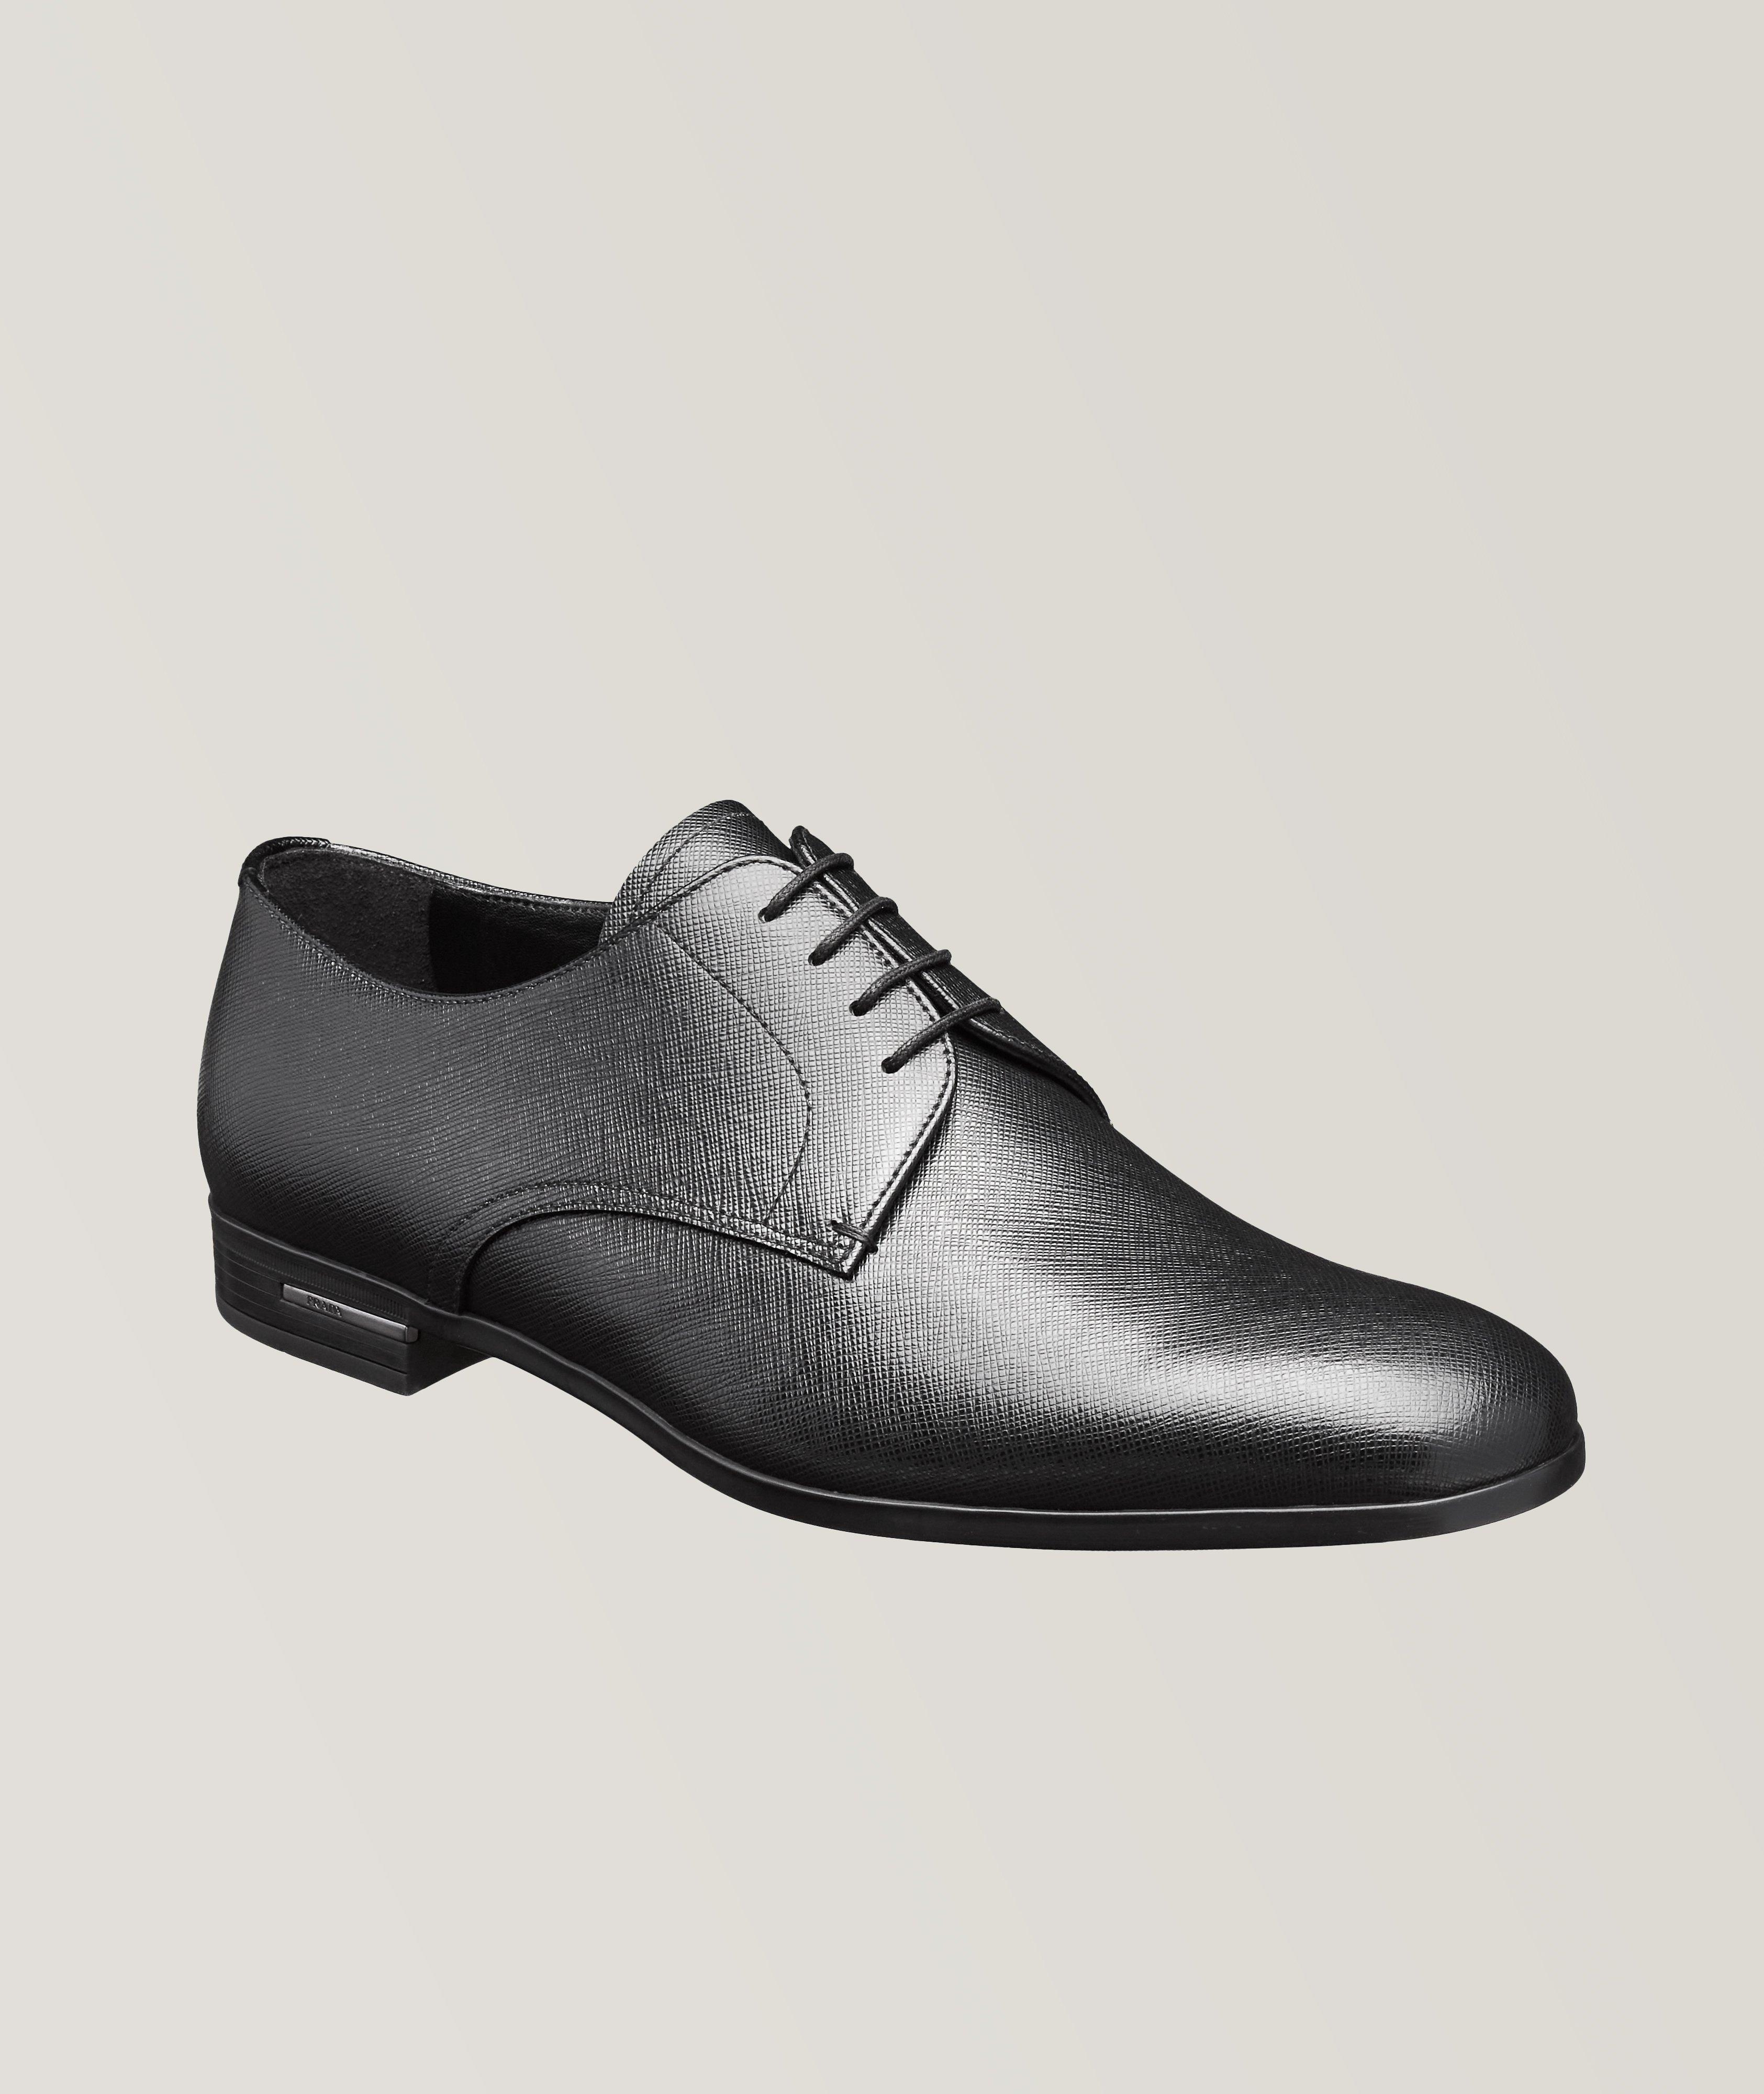 Chaussure lacée en cuir Saffiano image 0